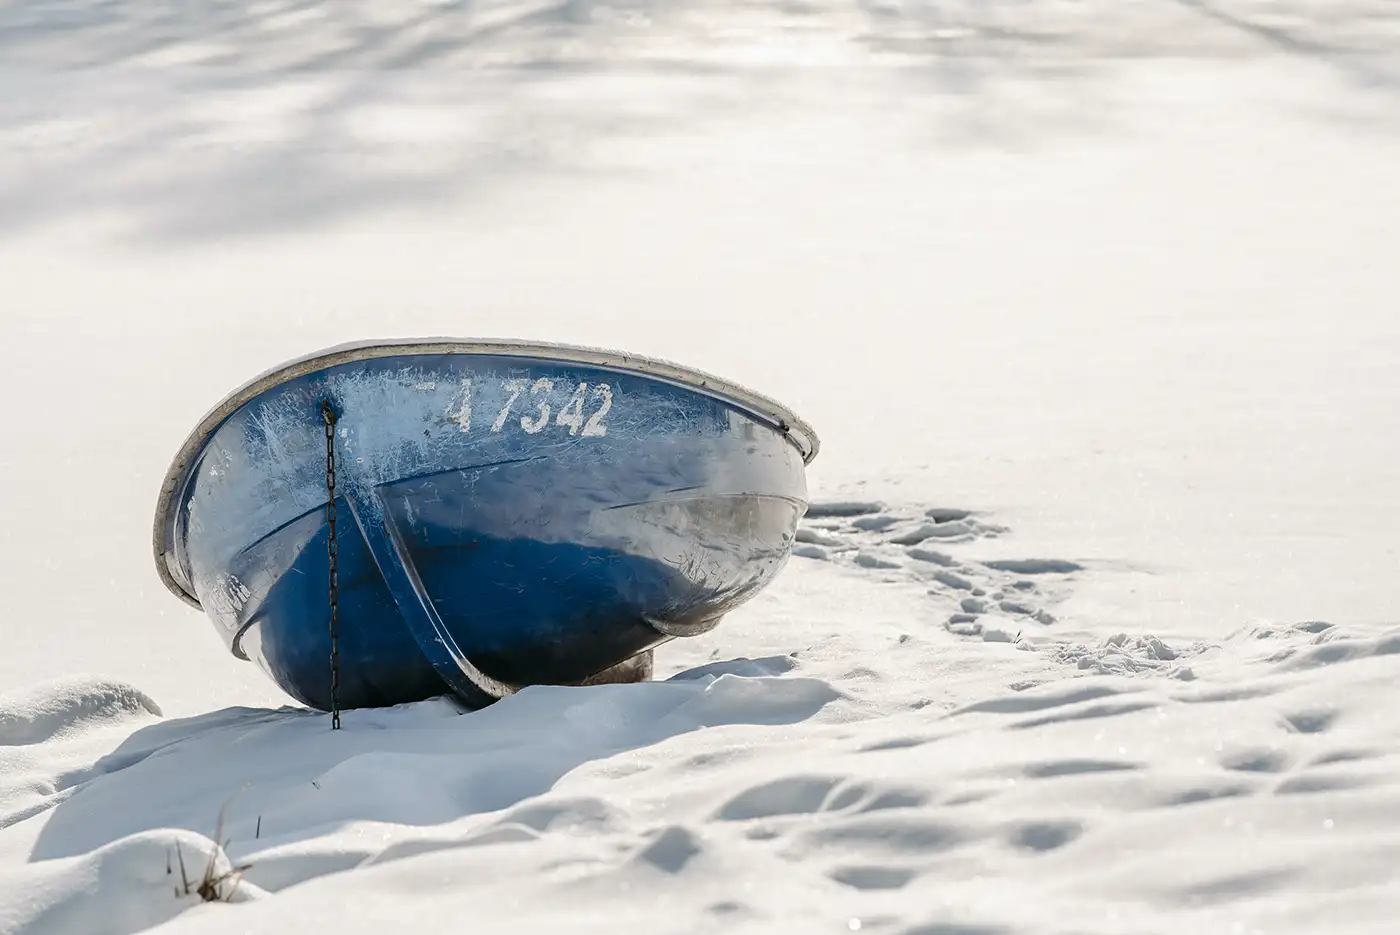 Ein am Ufer liegendes Ruderboot während des Winters.